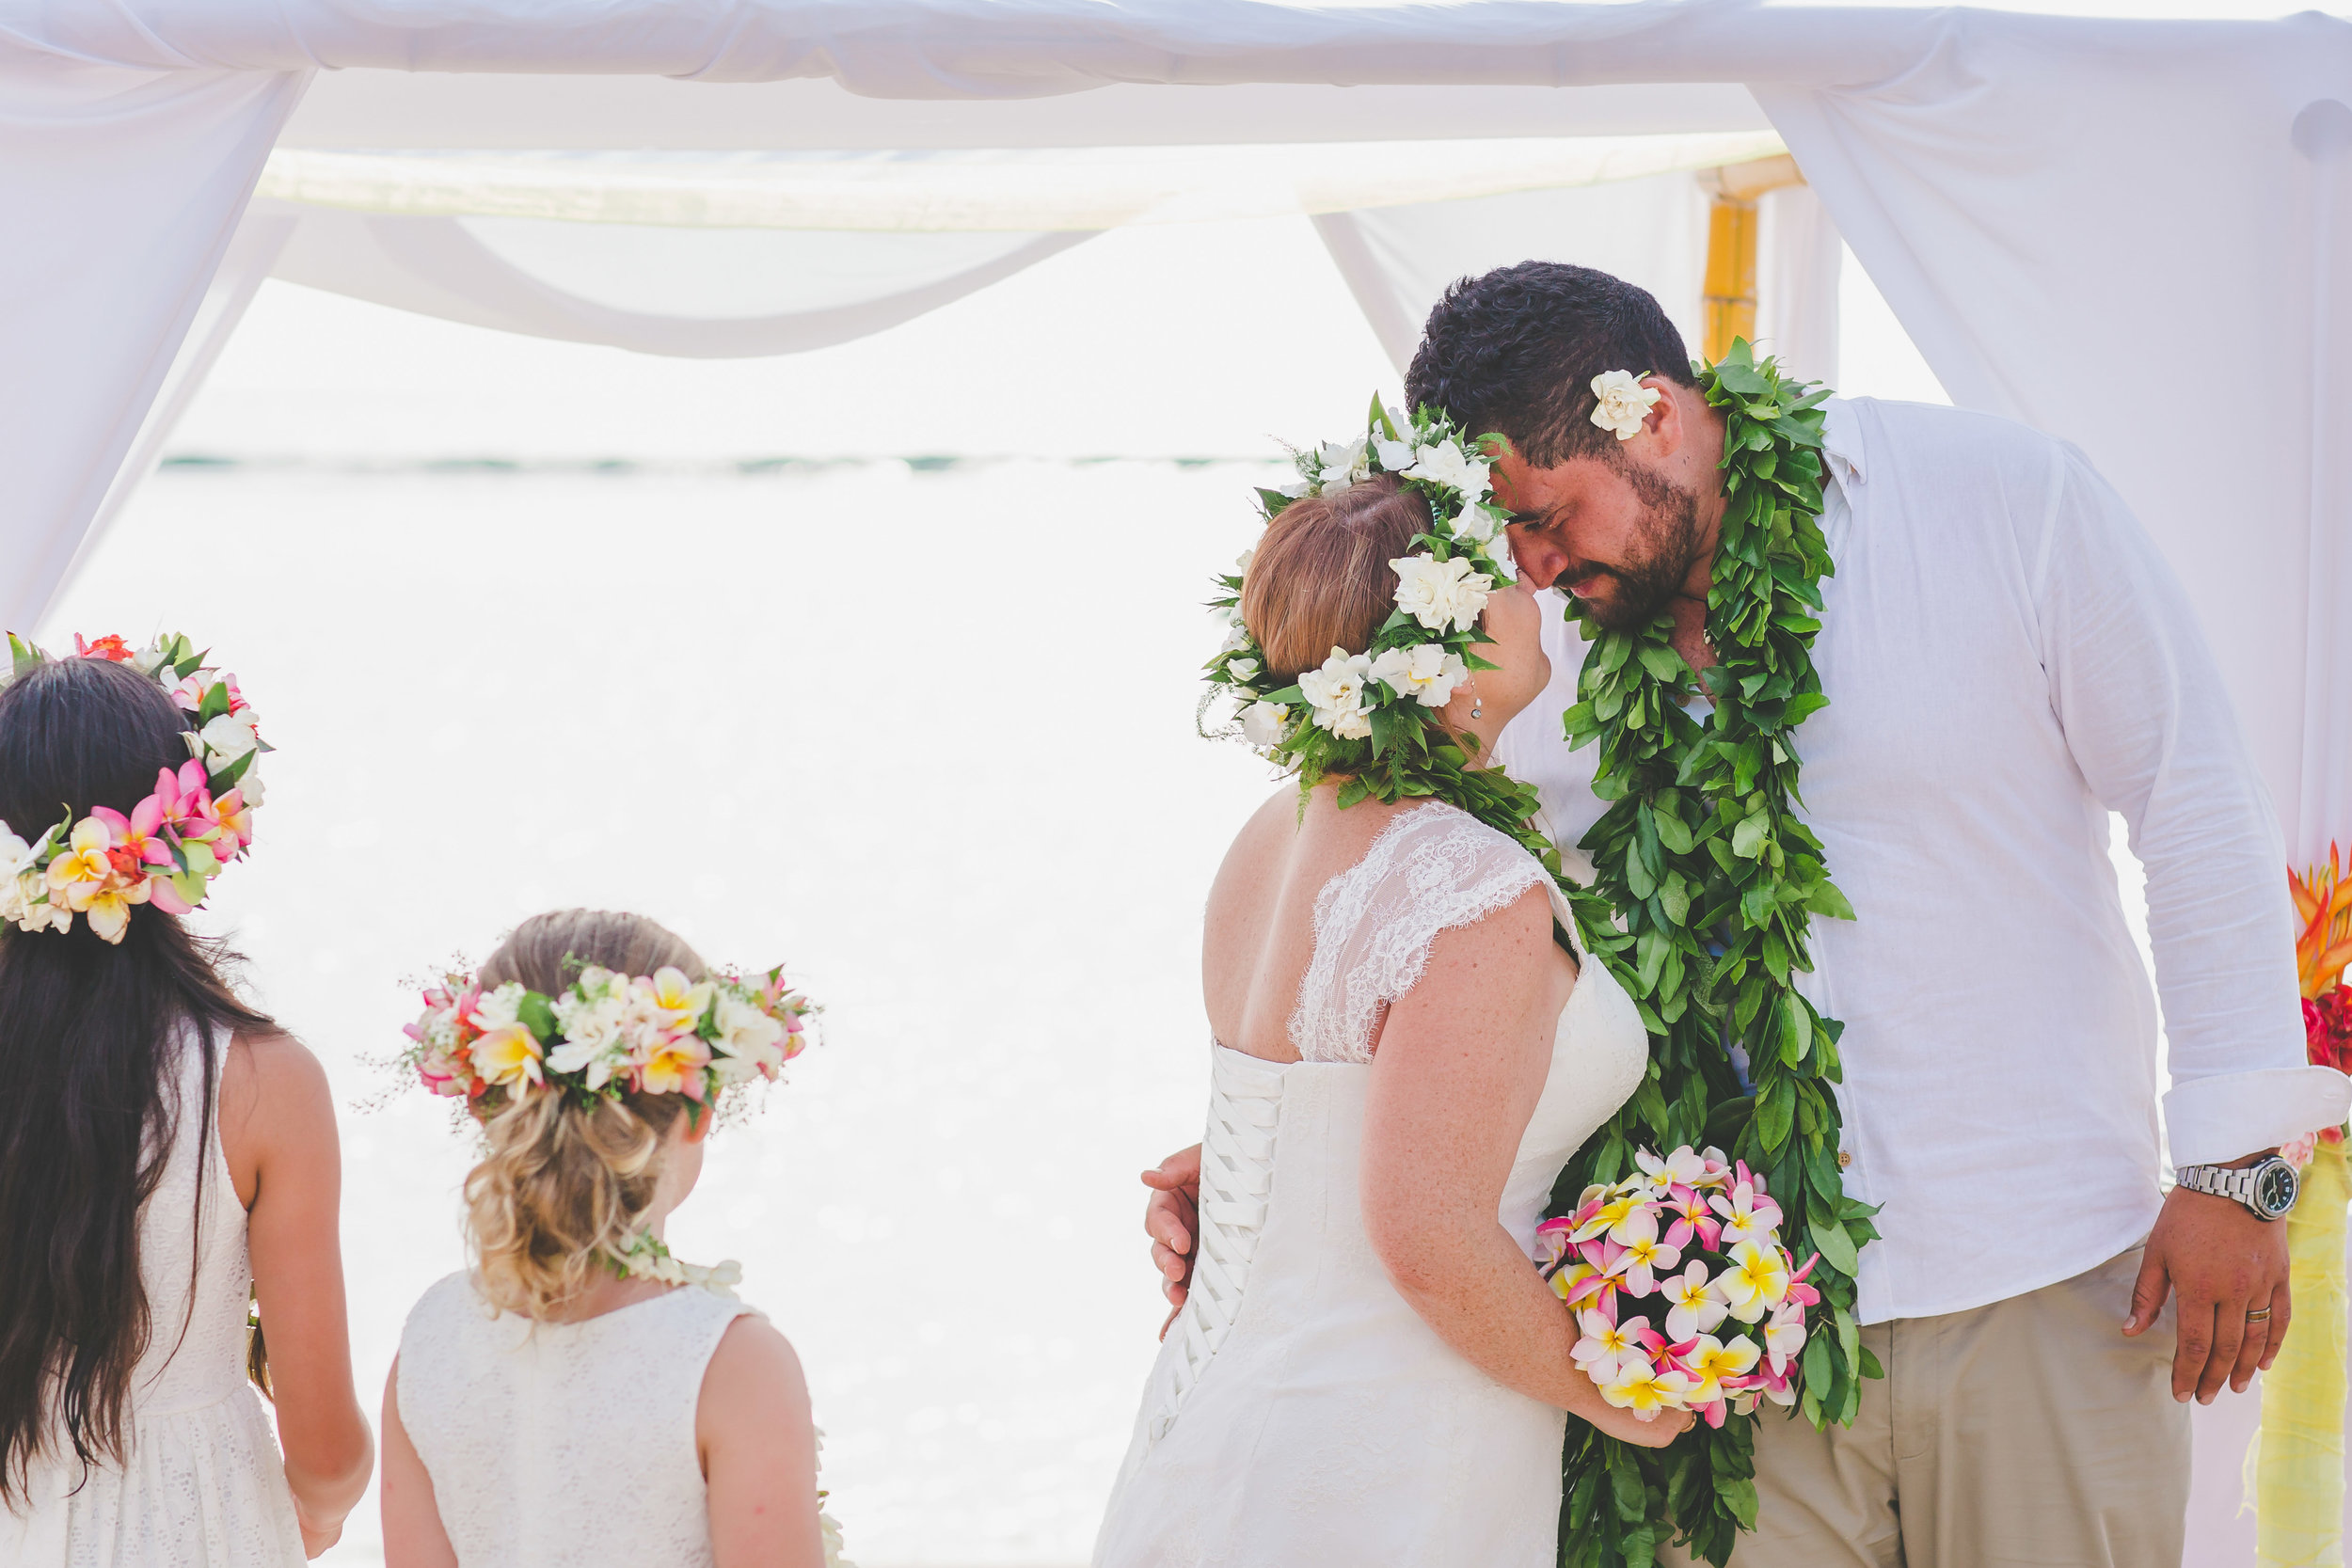 Beach wedding Cook Islands 